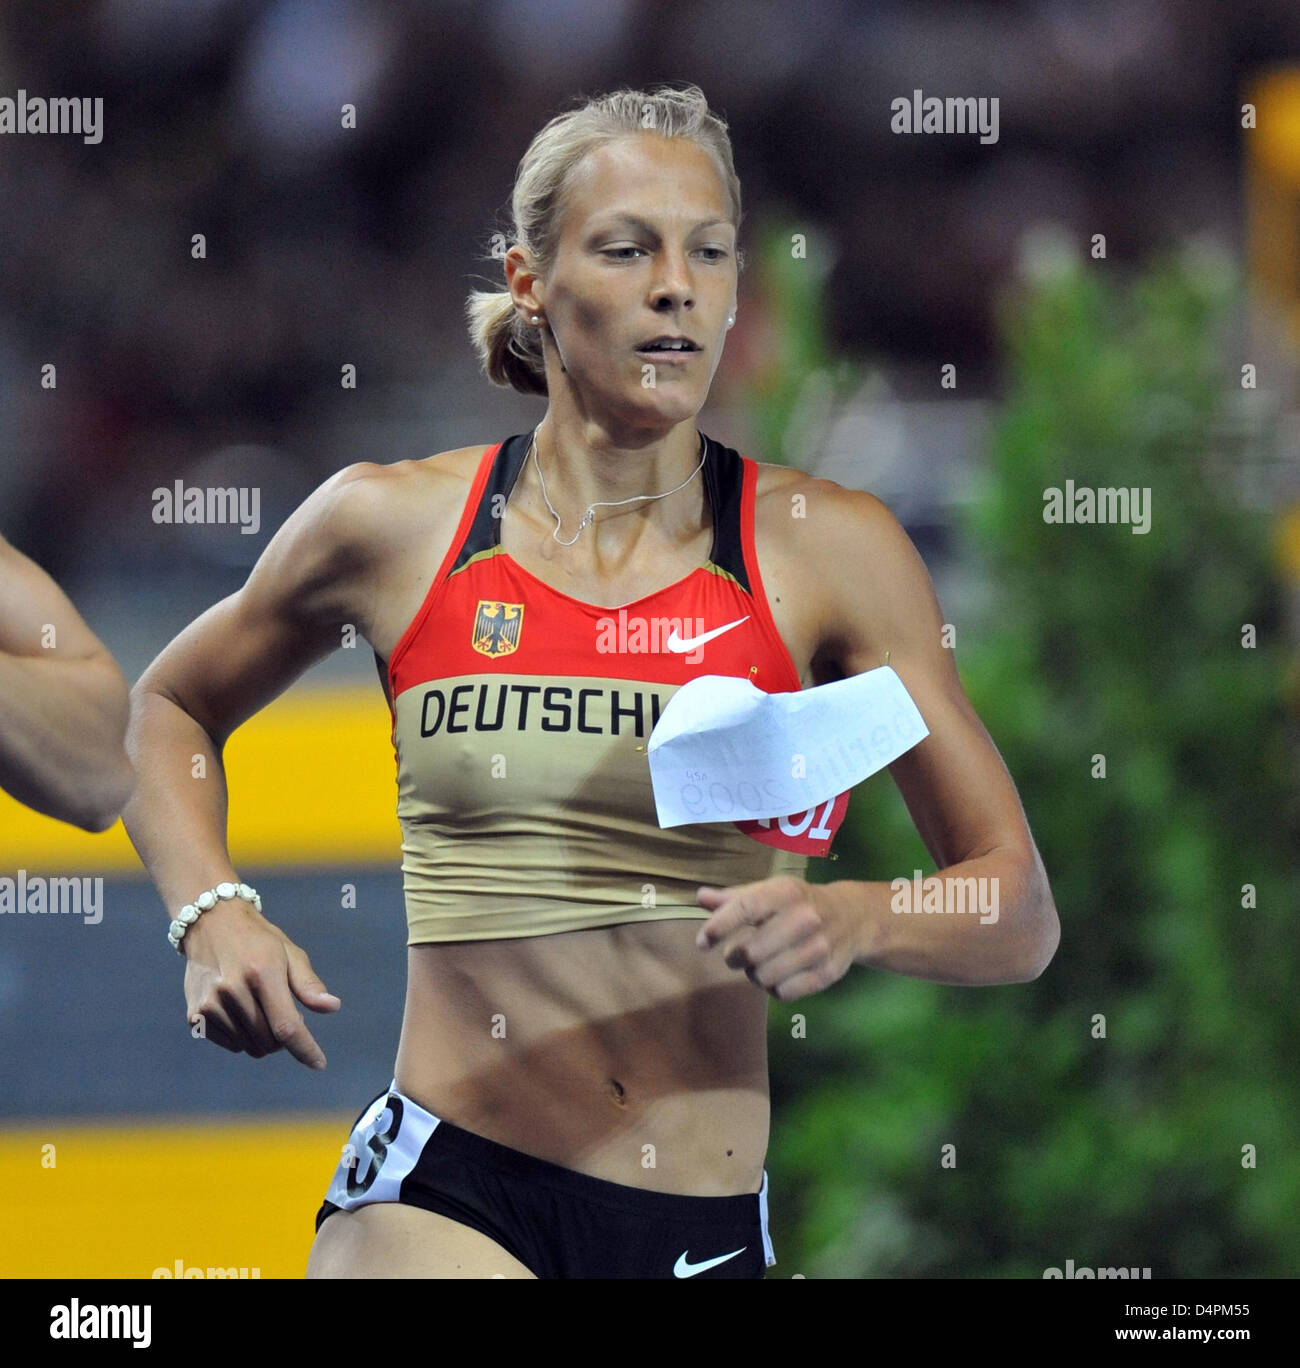 Alemán Jennifer Oeser se muestra en acción durante la final de 800m de competición del heptathlon en el 12º Campeonato del Mundo IAAF de Atletismo en Berlín, Alemania, el 16 de agosto de 2009. Oeser ganó la medalla de plata. Foto: Bernd Thyssen Foto de stock